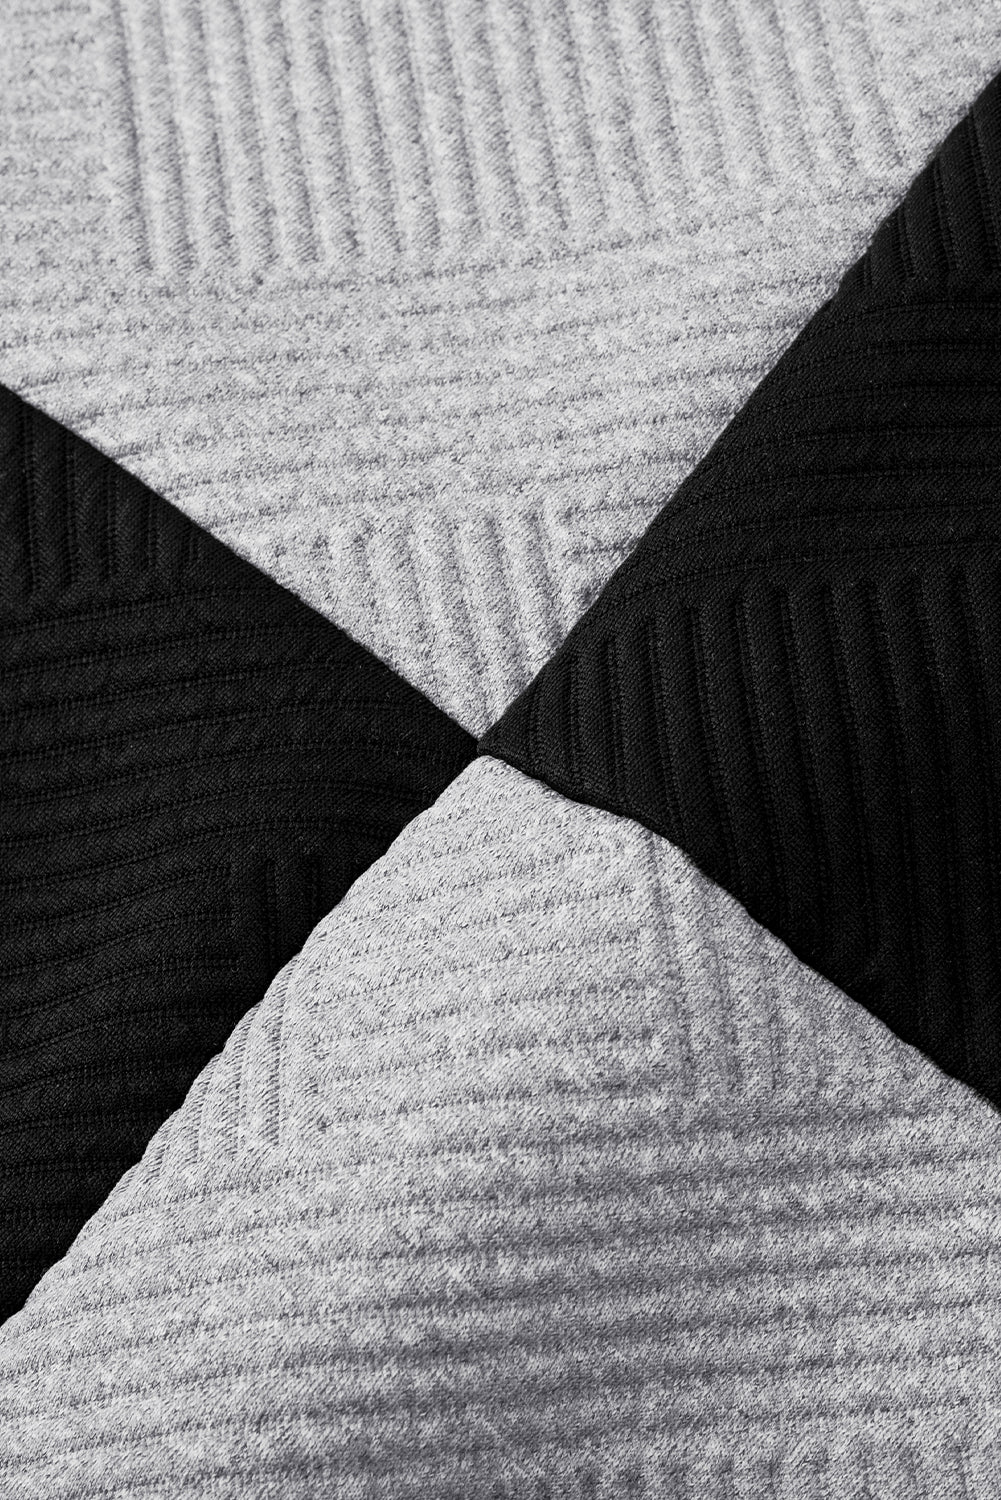 Schwarzes, strukturiertes Oberteil mit überschnittener Schulterpartie im Farbblockdesign